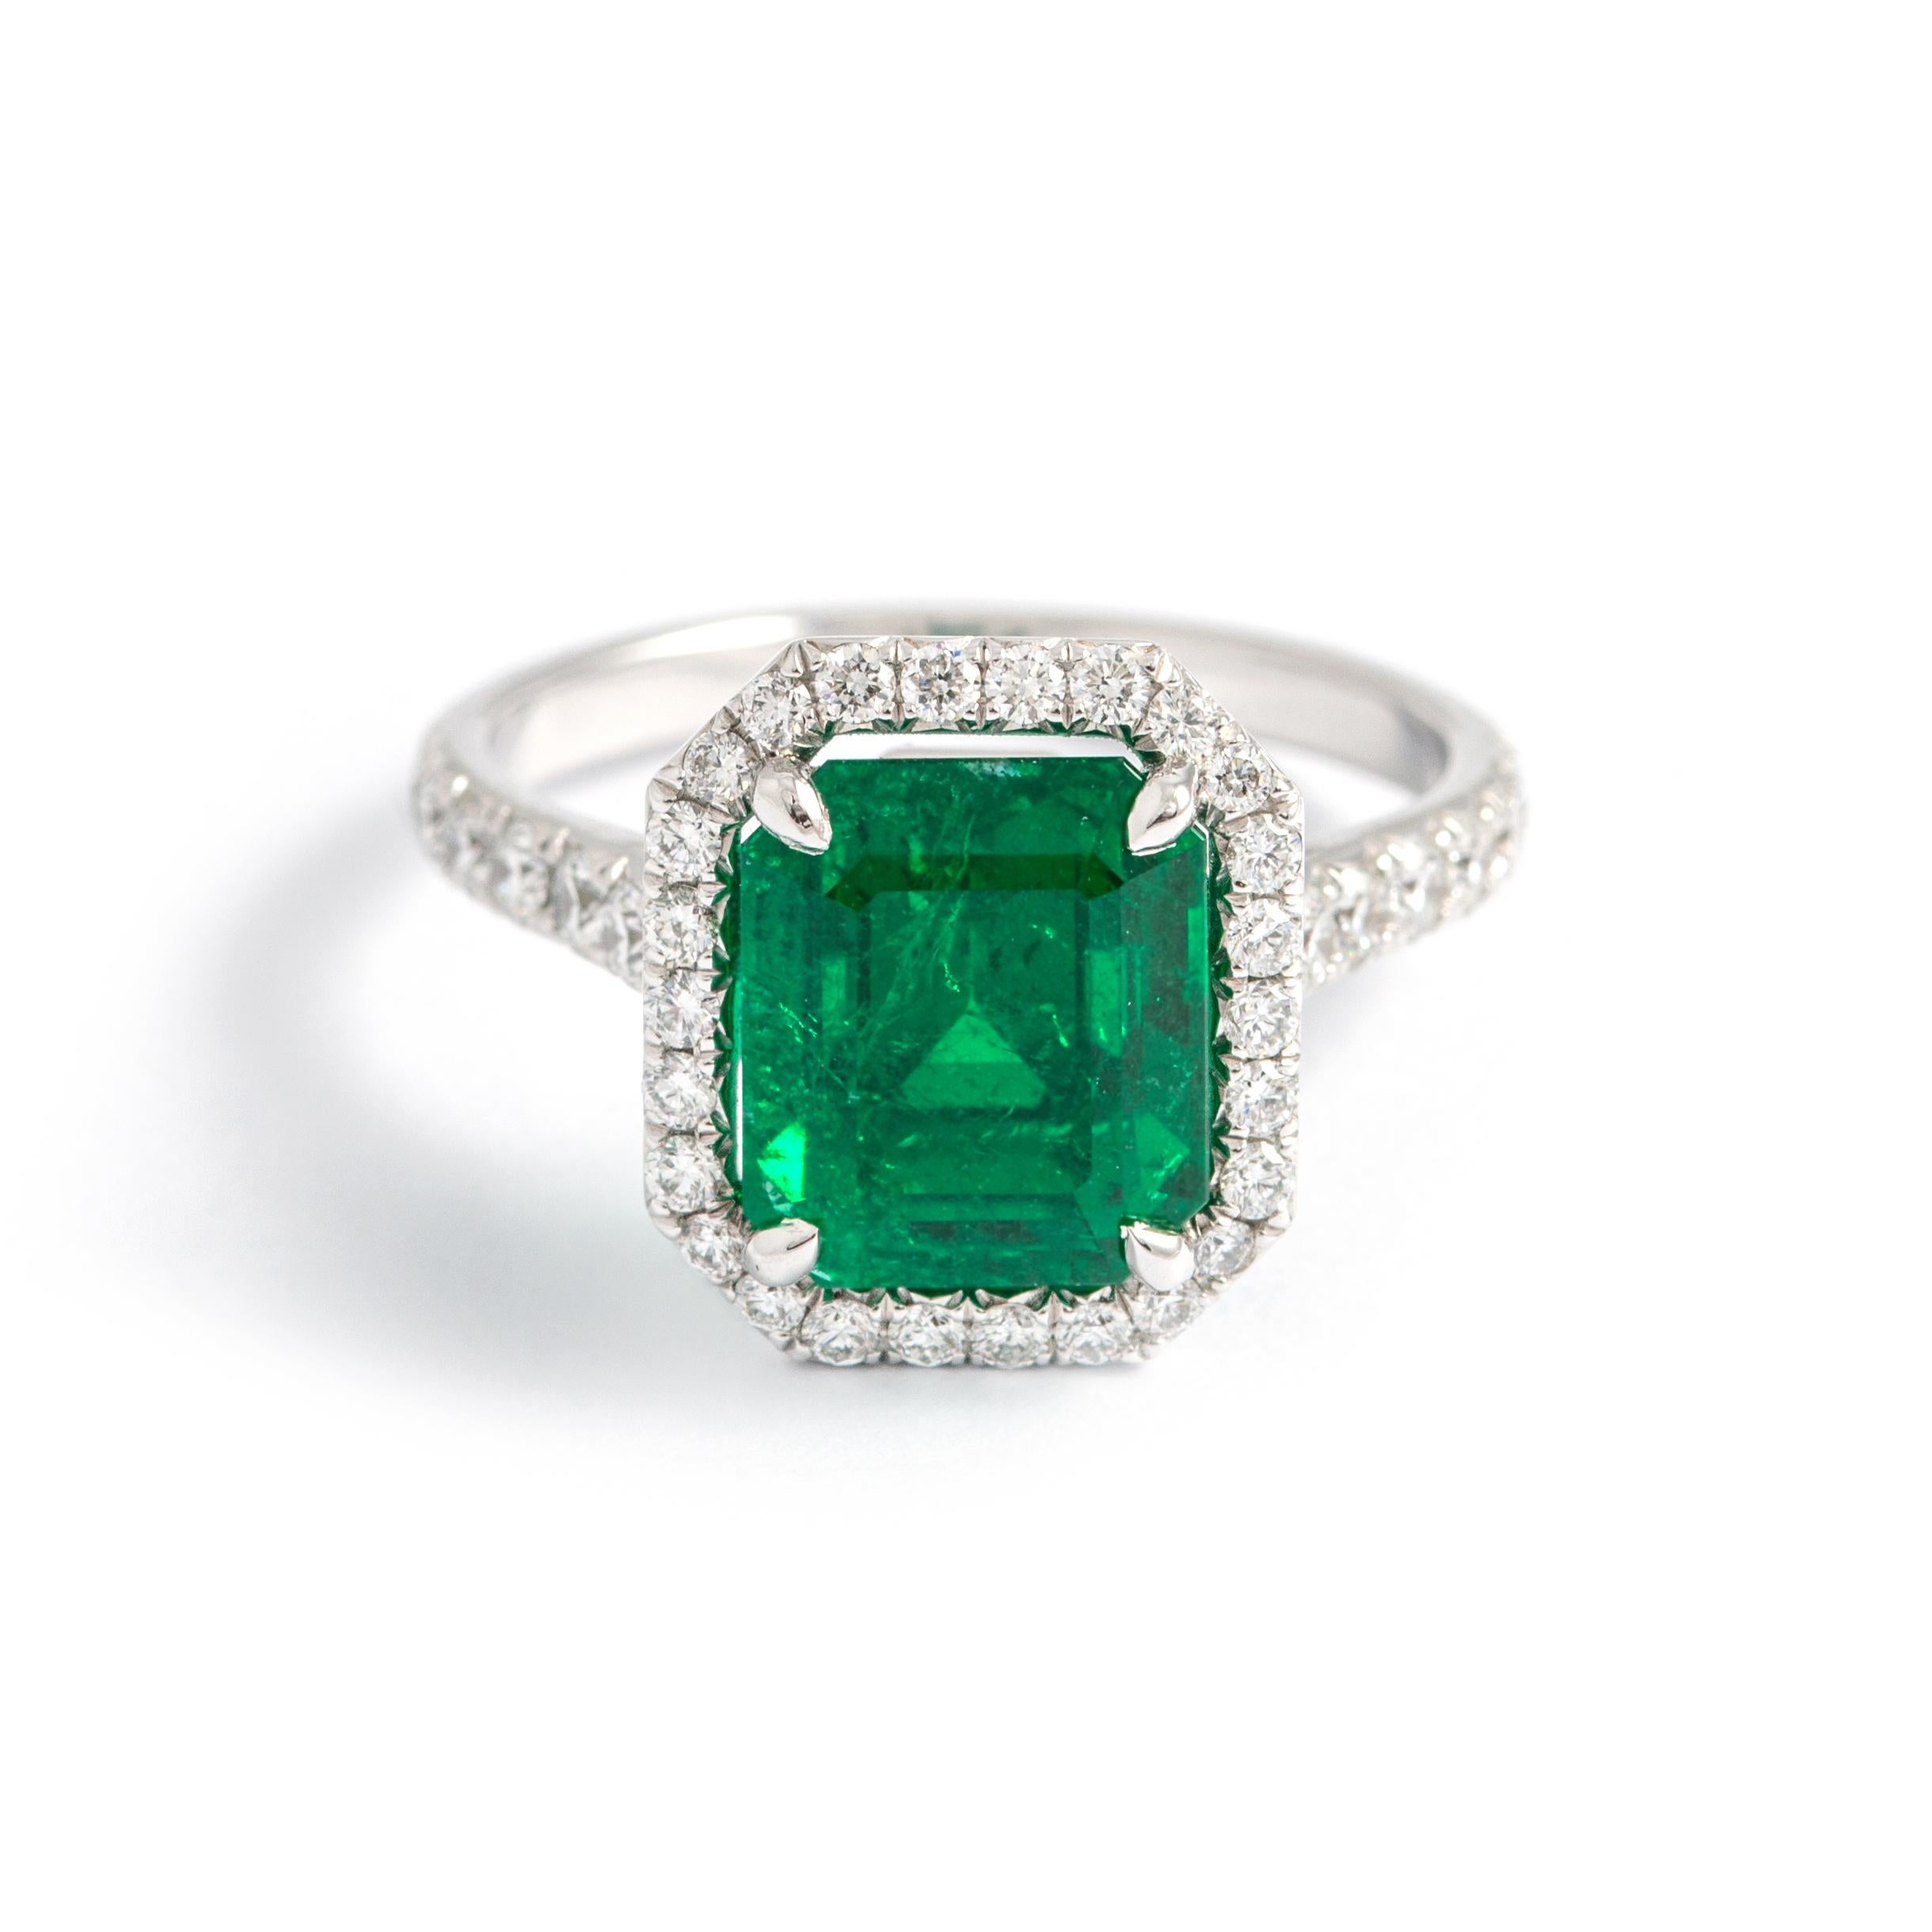 3.85 Karat Smaragd umgeben von Diamant Weißgold Ring.